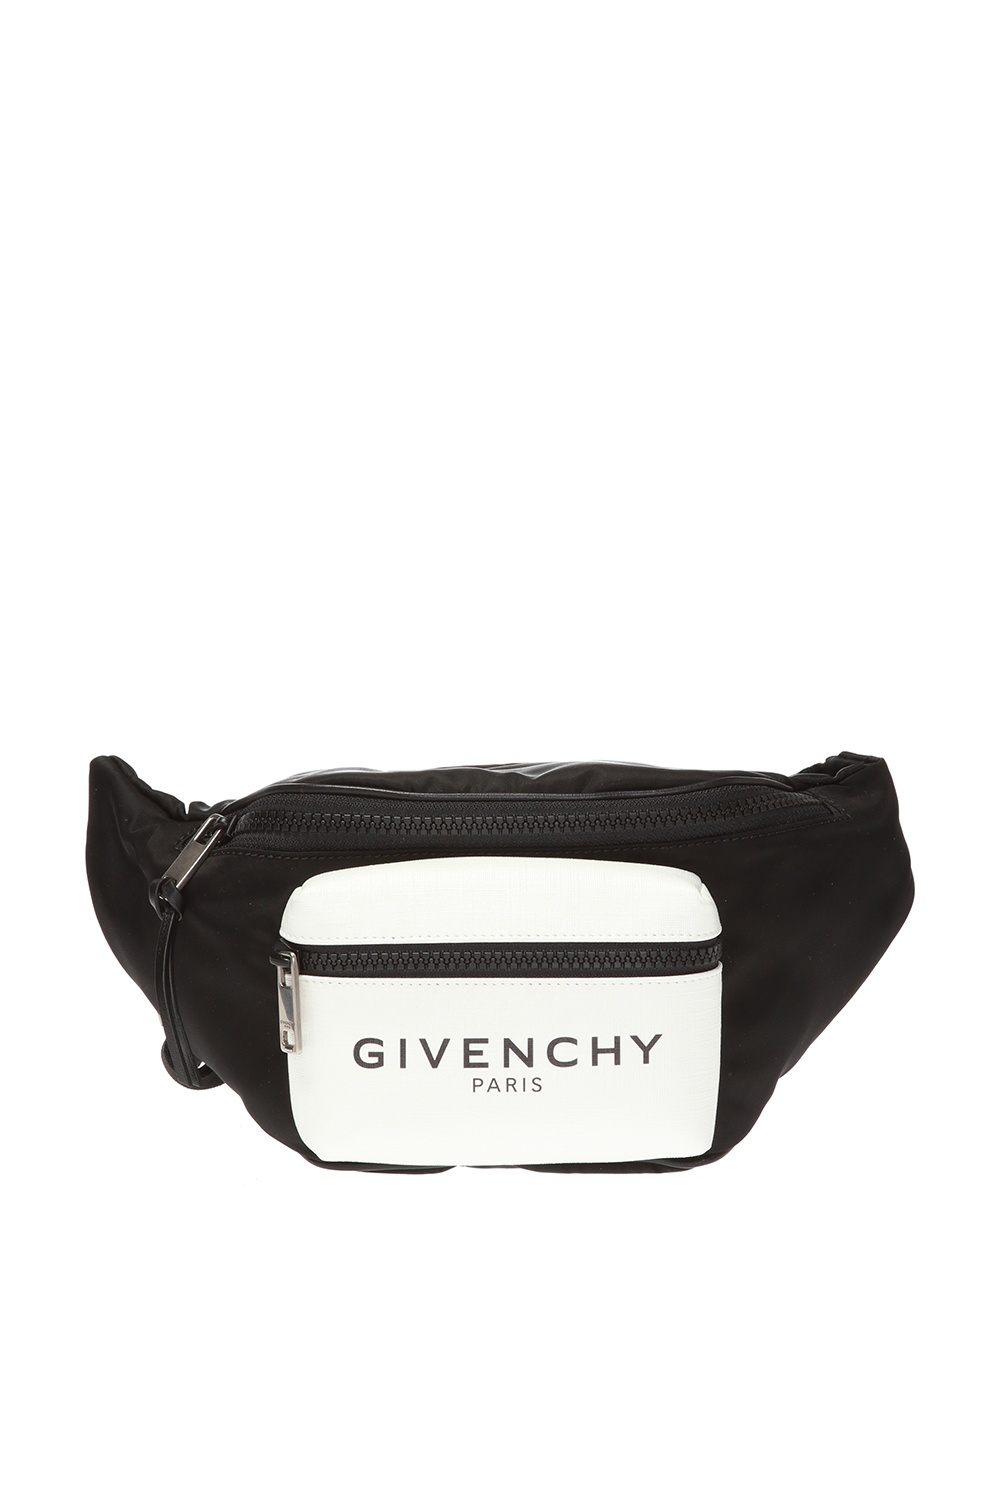 givenchy light 3 belt bag